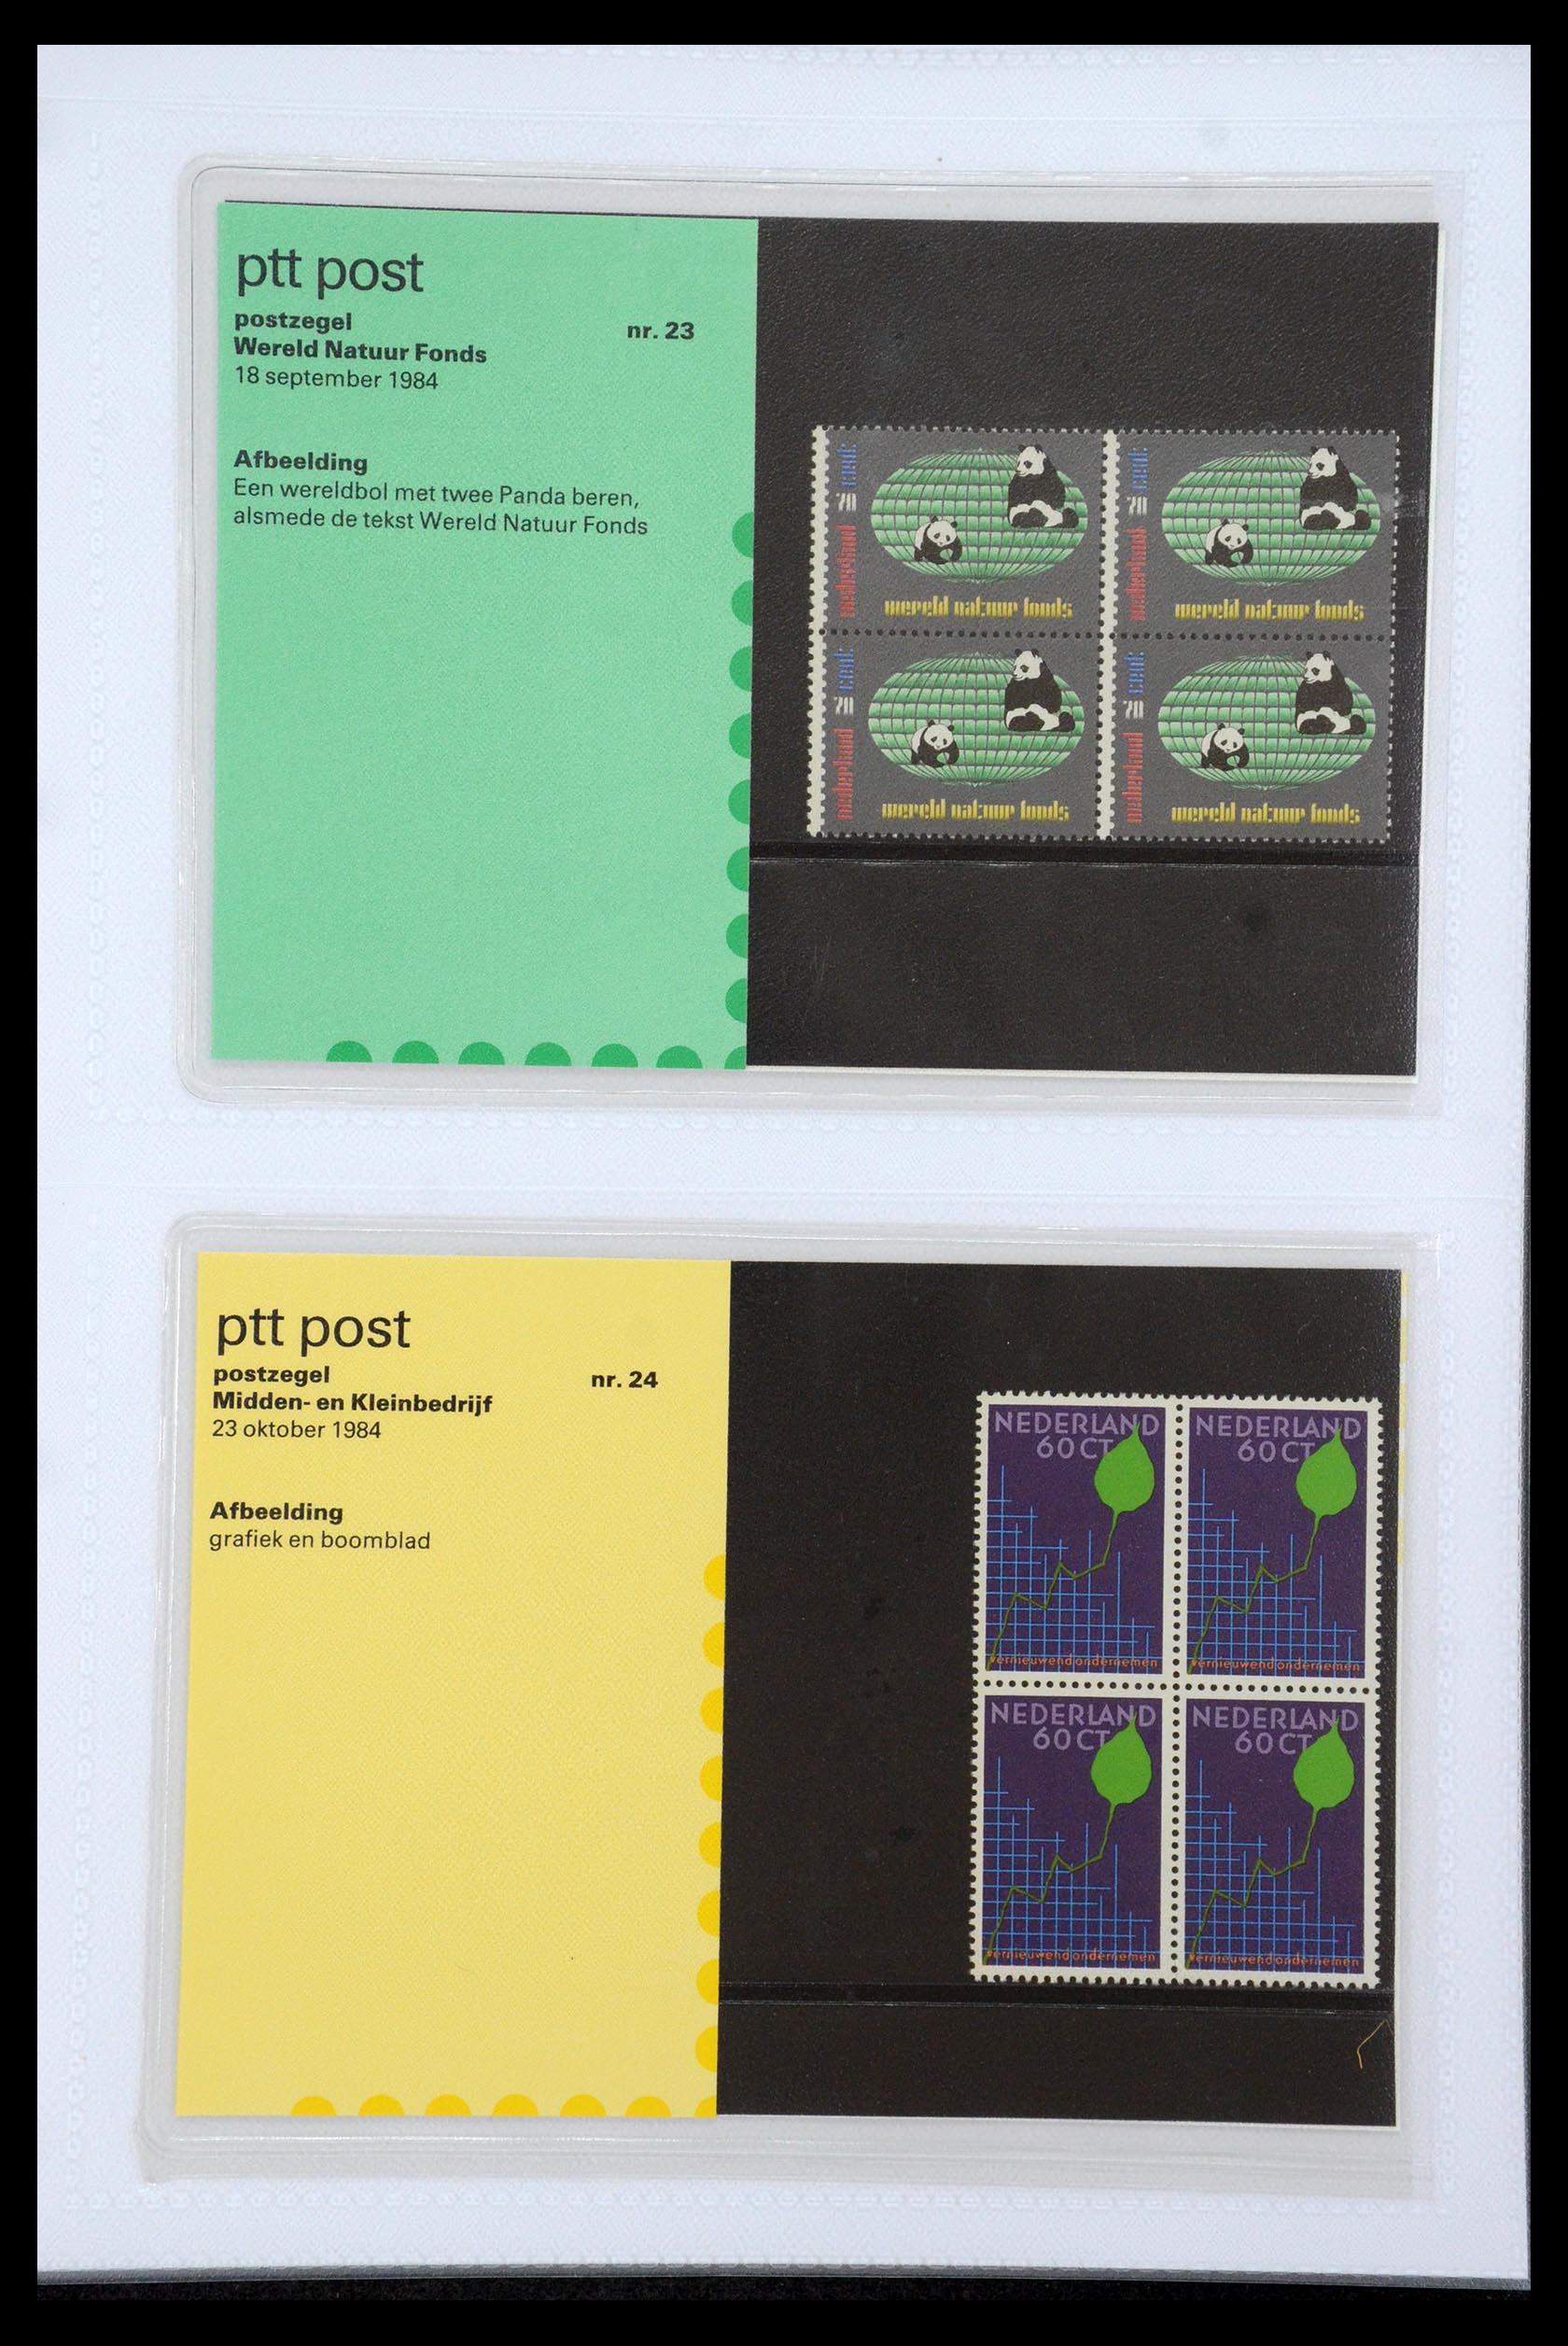 35947 012 - Stamp Collection 35947 Netherlands PTT presentation packs 1982-2019!